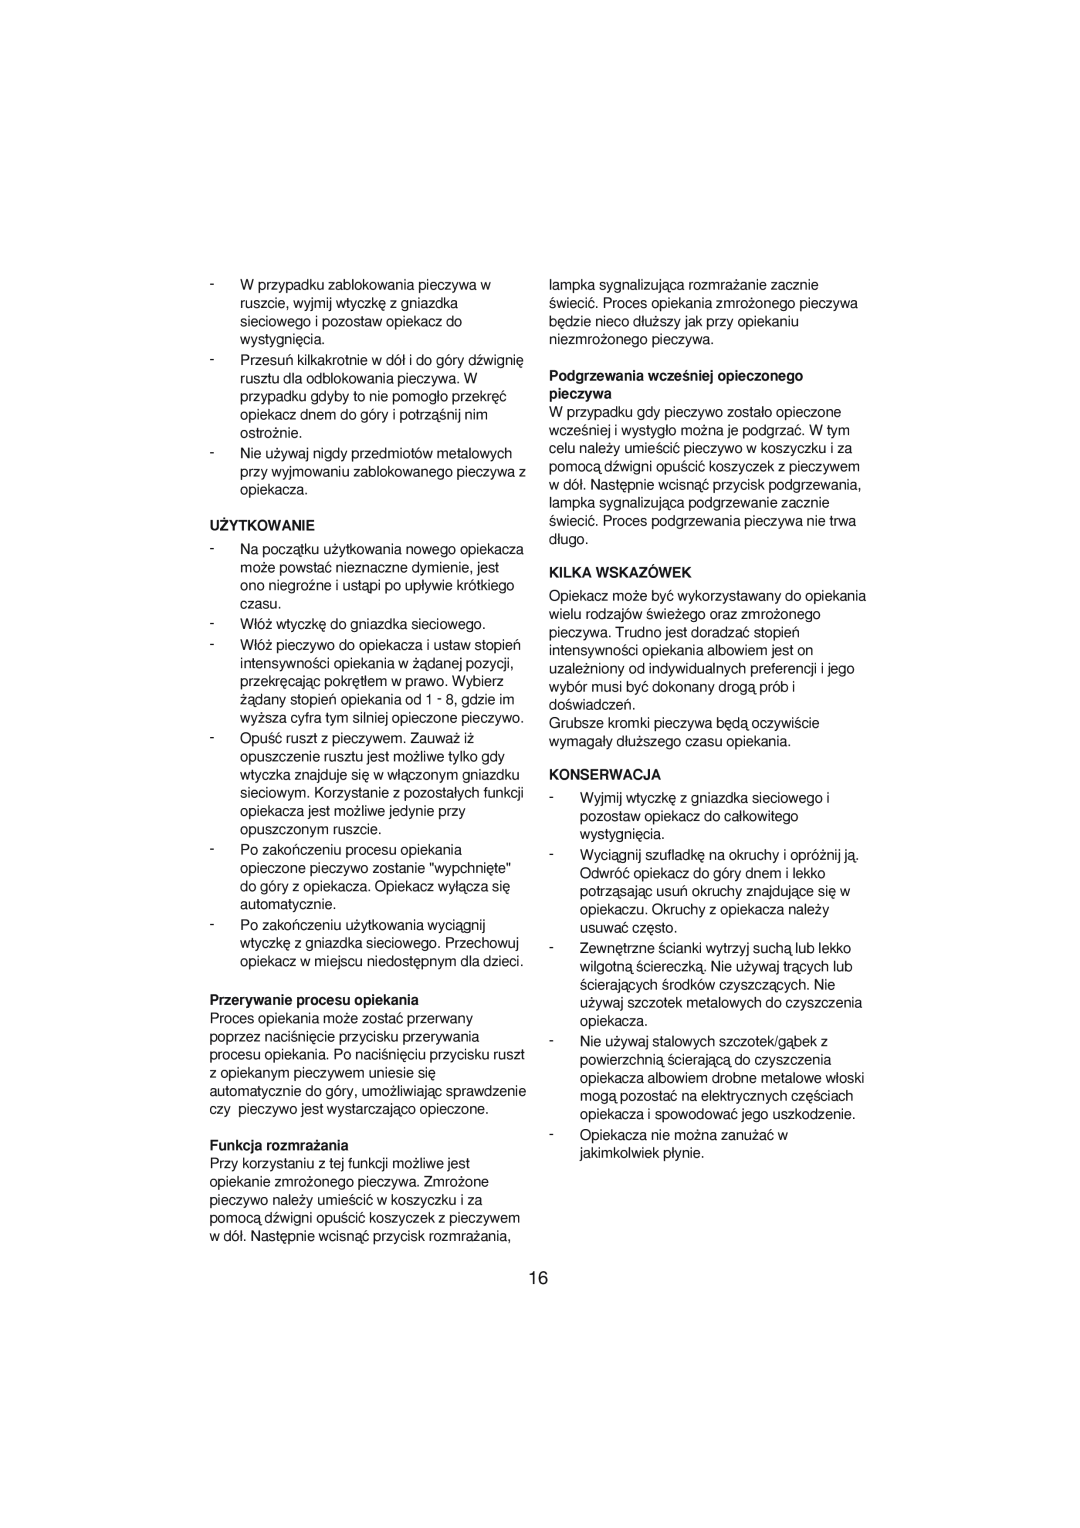 Melissa 243-002 manual U˚Ytkowanie, Przerywanie procesu opiekania, Funkcja rozmra˝ania, Kilka Wskazówek, Konserwacja 